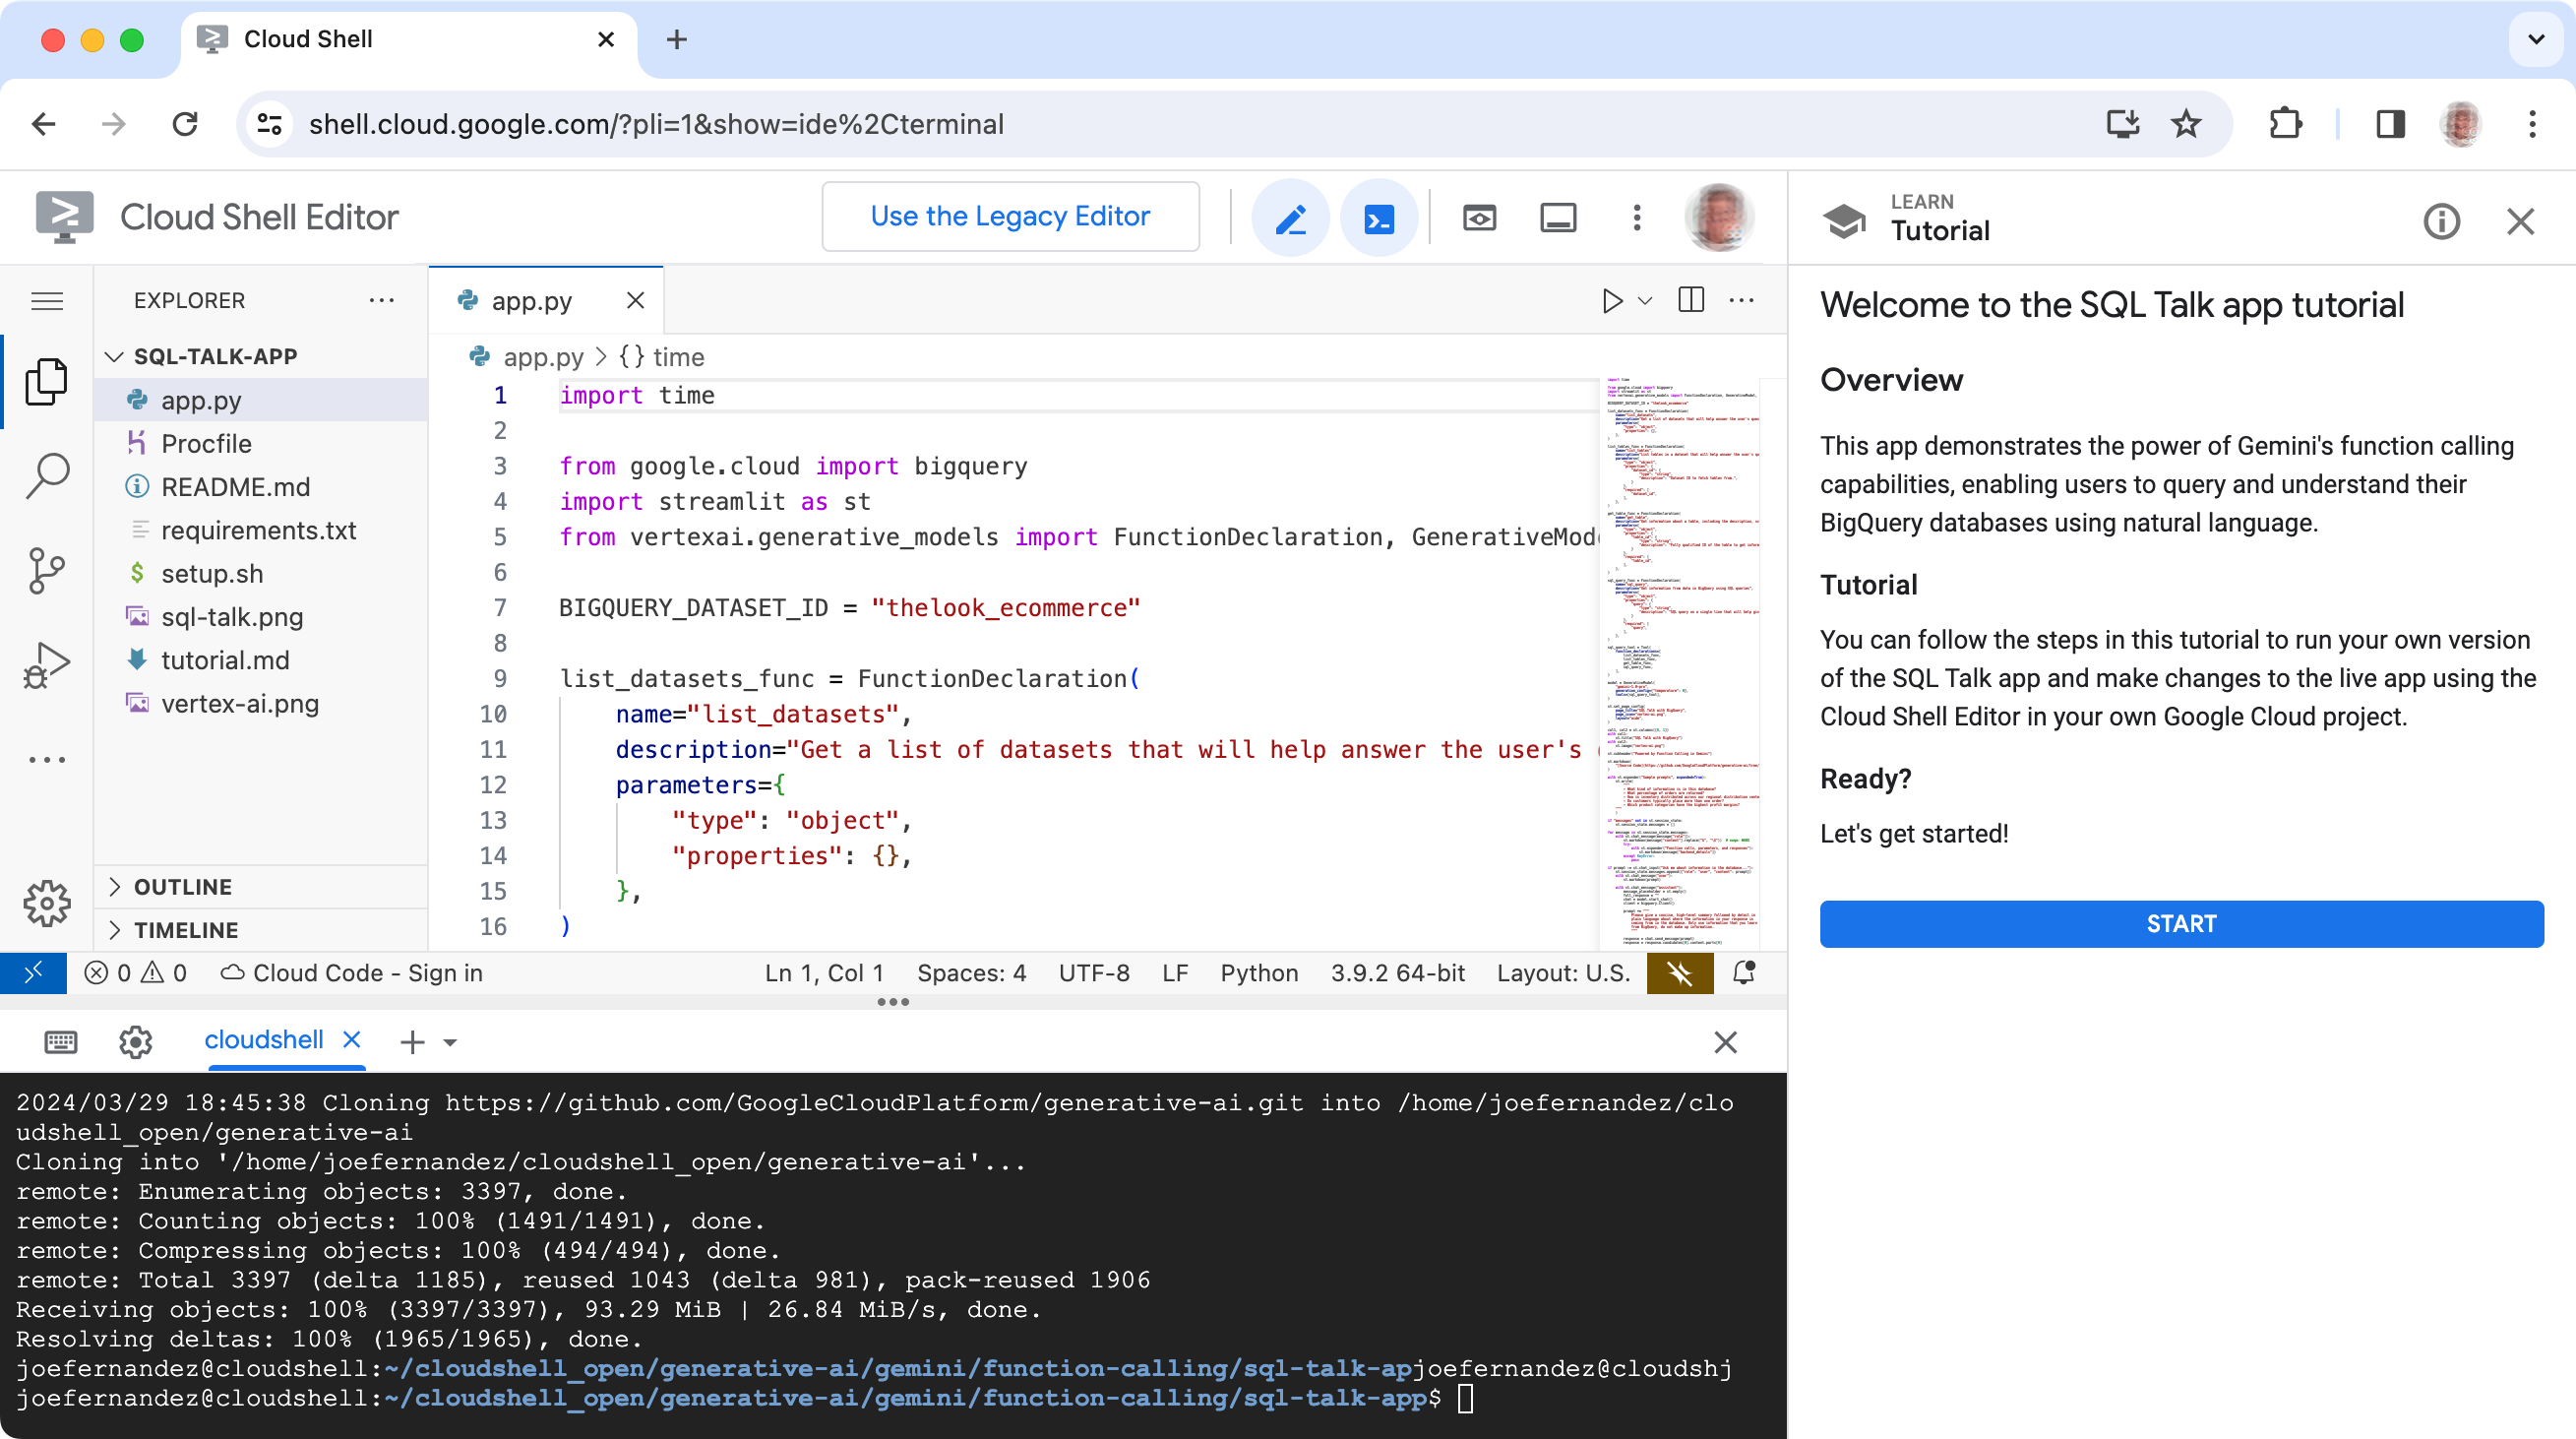 Editor de Google Cloud Shell en el que se muestra el código del proyecto de SQL Talk